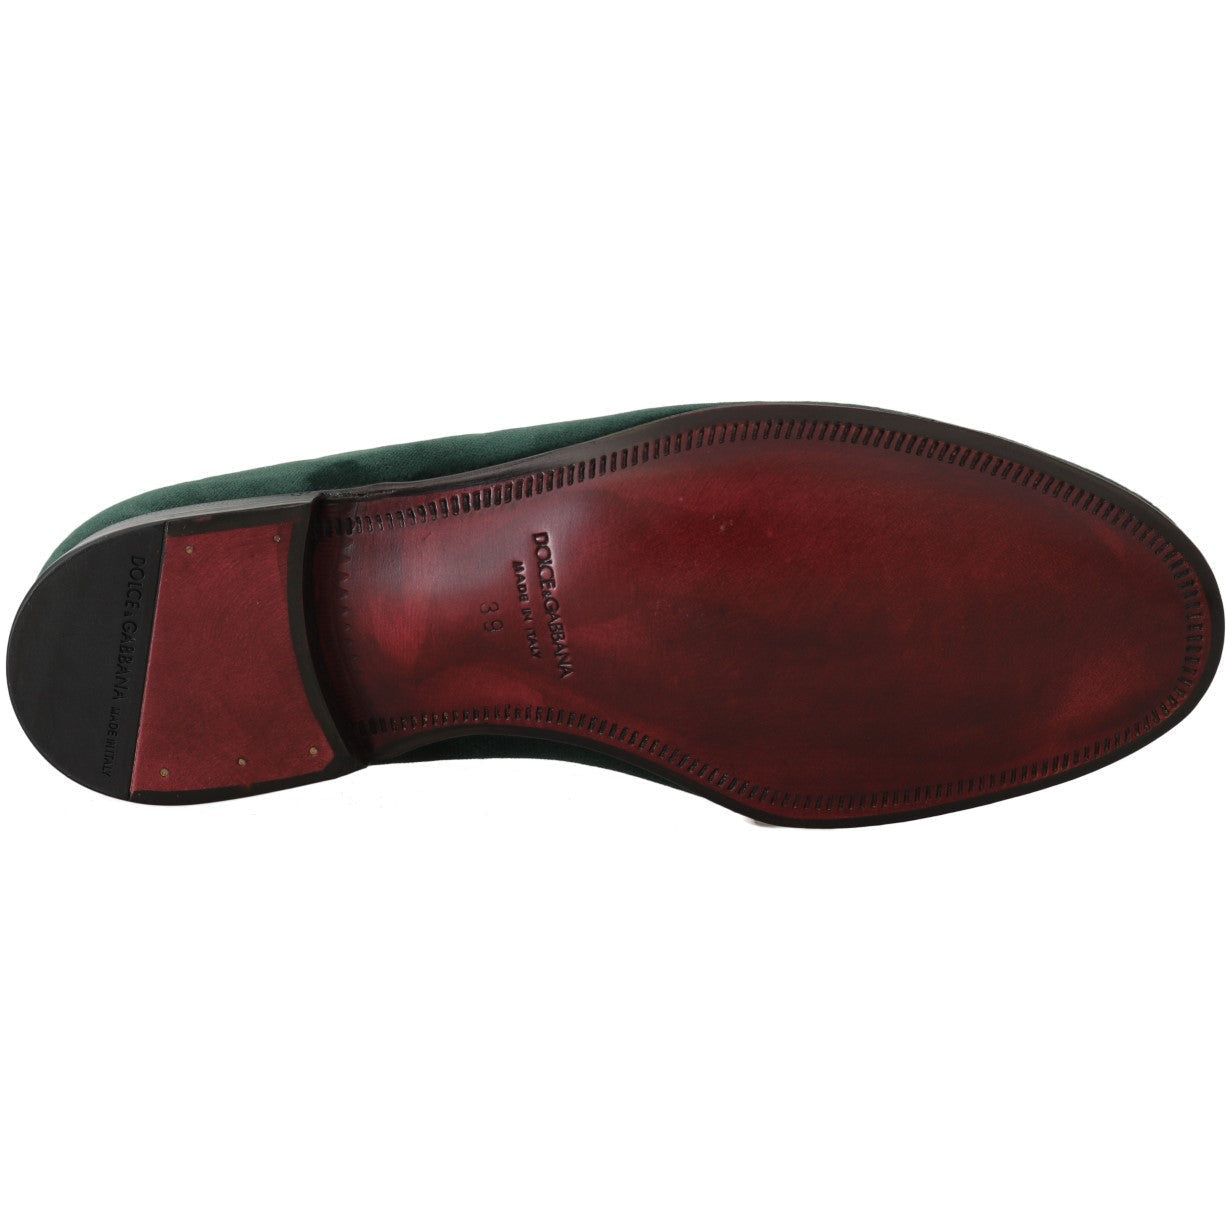 Dolce & Gabbana Elegant Green Suede Slip-On Loafers green-suede-leather-slippers-loafers 550450-green-suede-leather-slippers-loafers-6_36930b13-2df4-43b0-934e-dcfee4b5c587.jpg